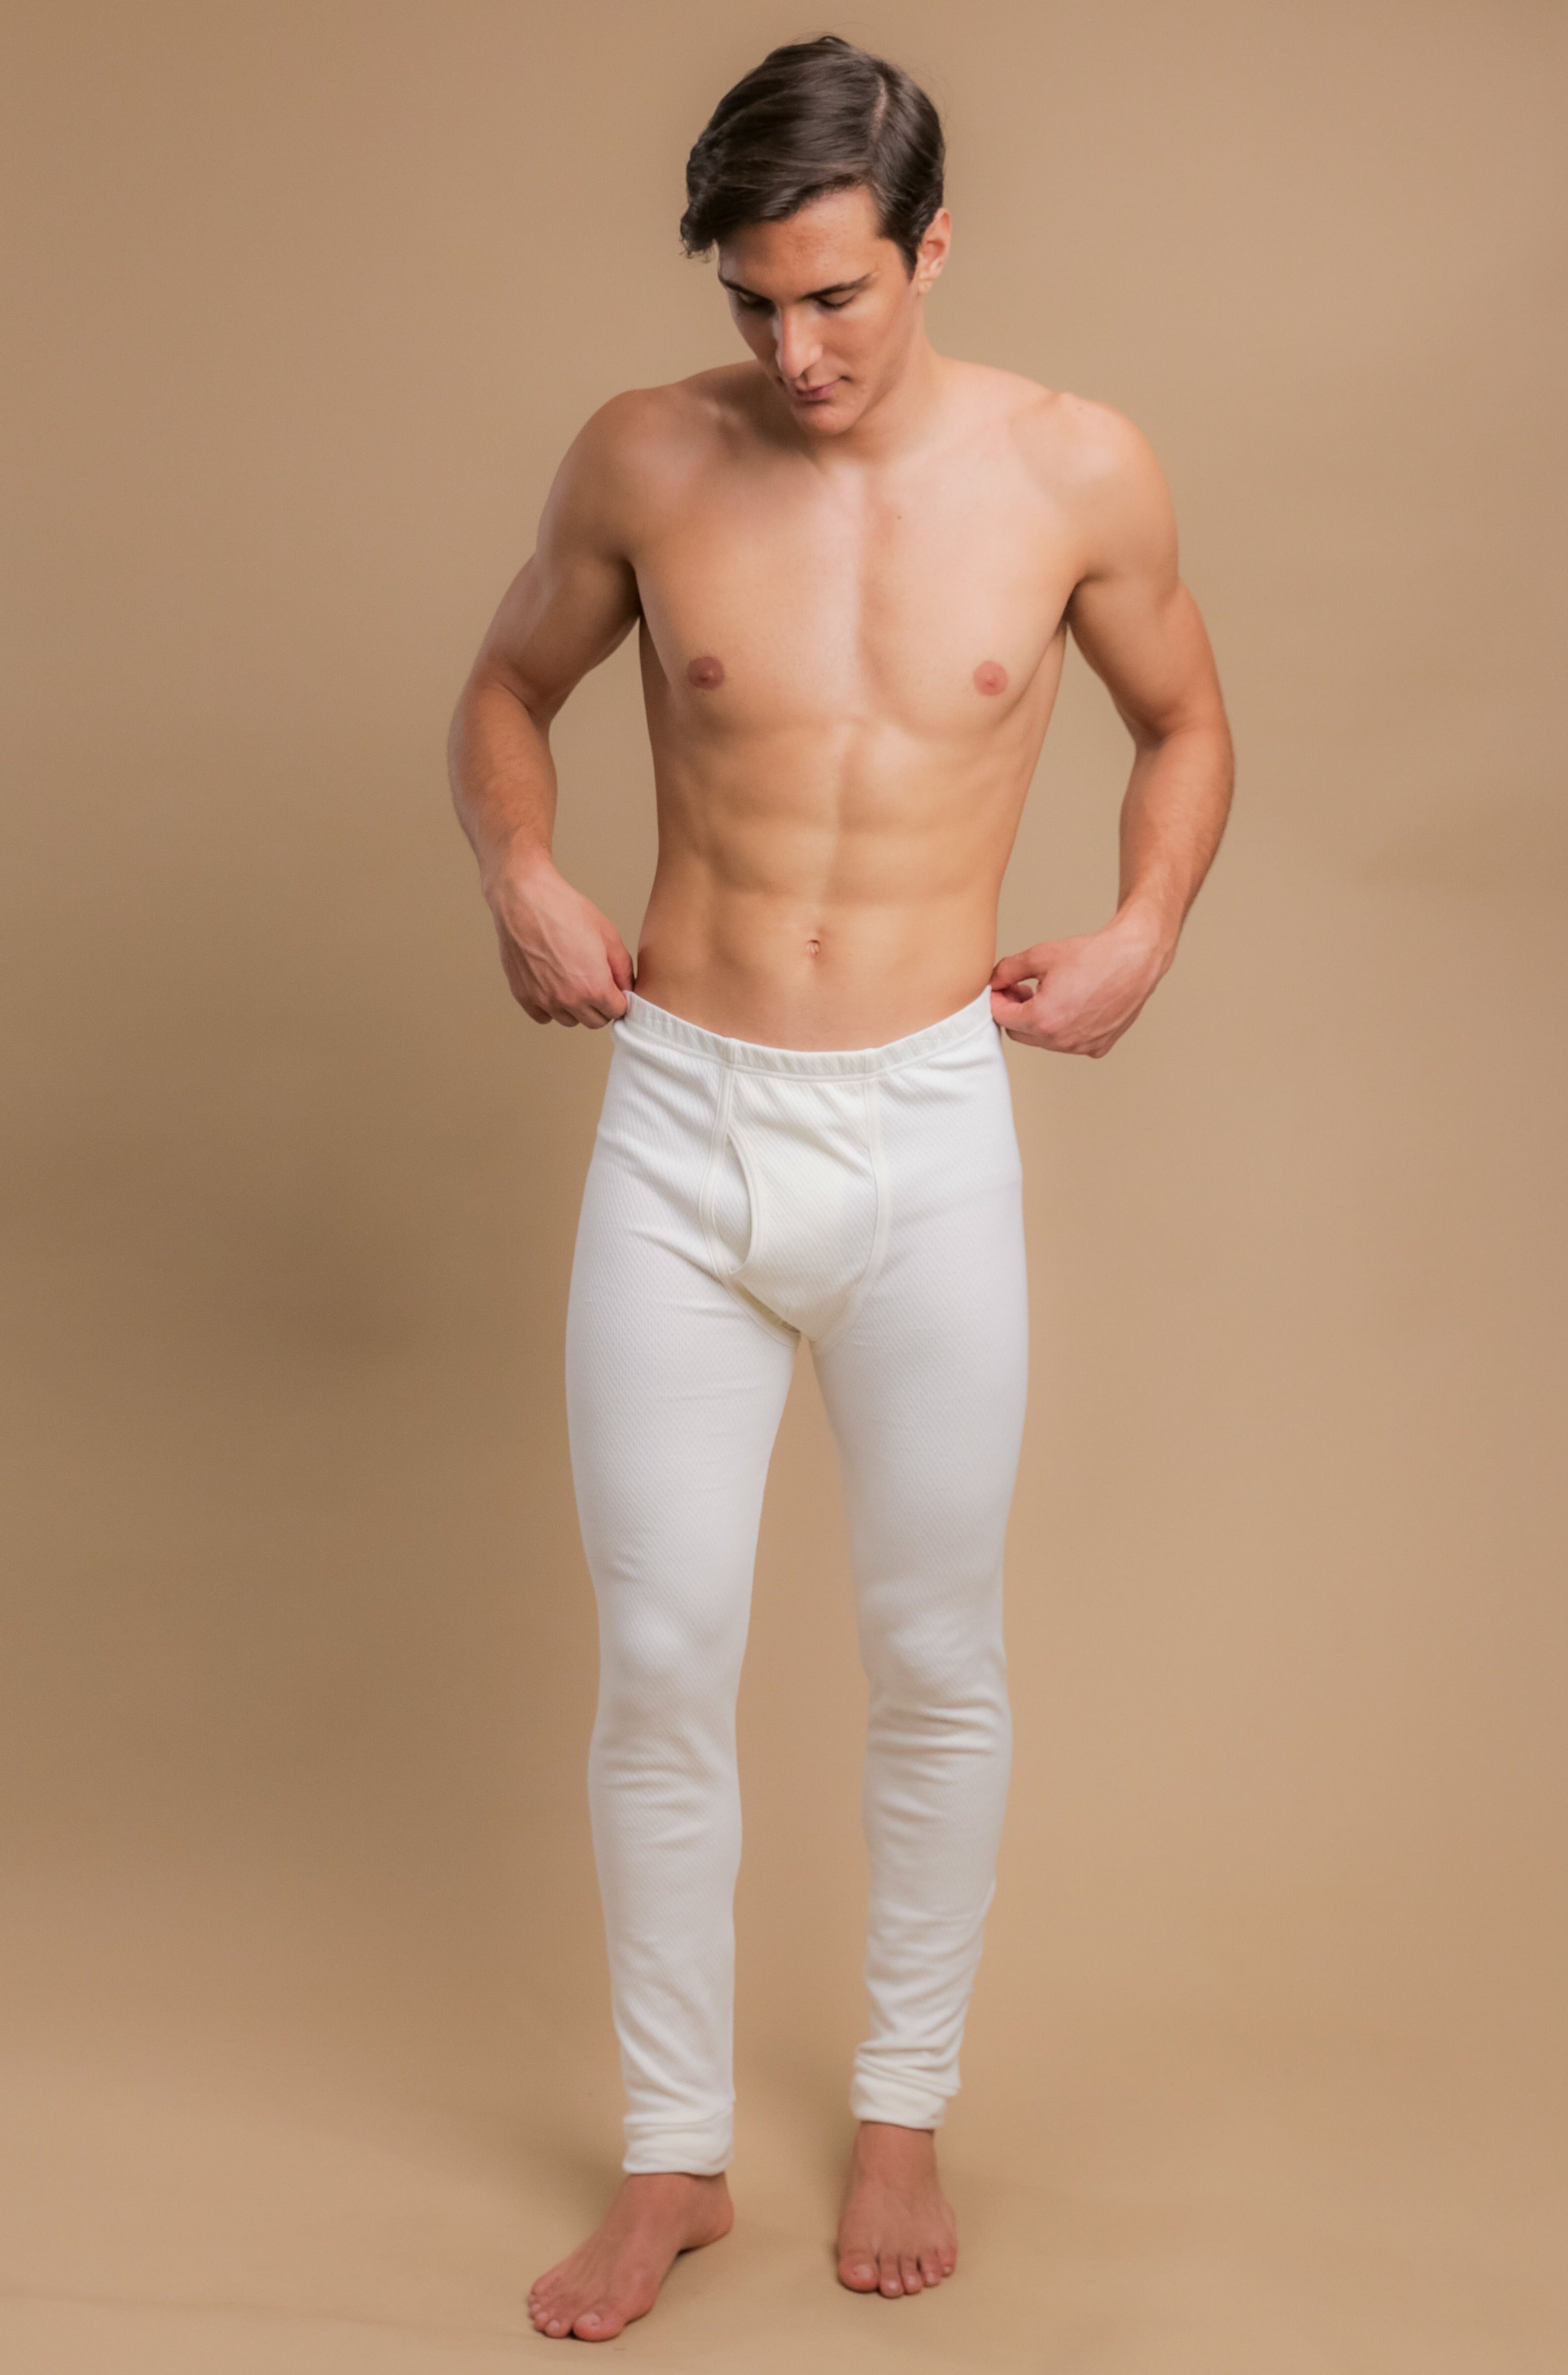 Absolute Apparel - Sous-pantalon thermique - Homme (M) (Blanc